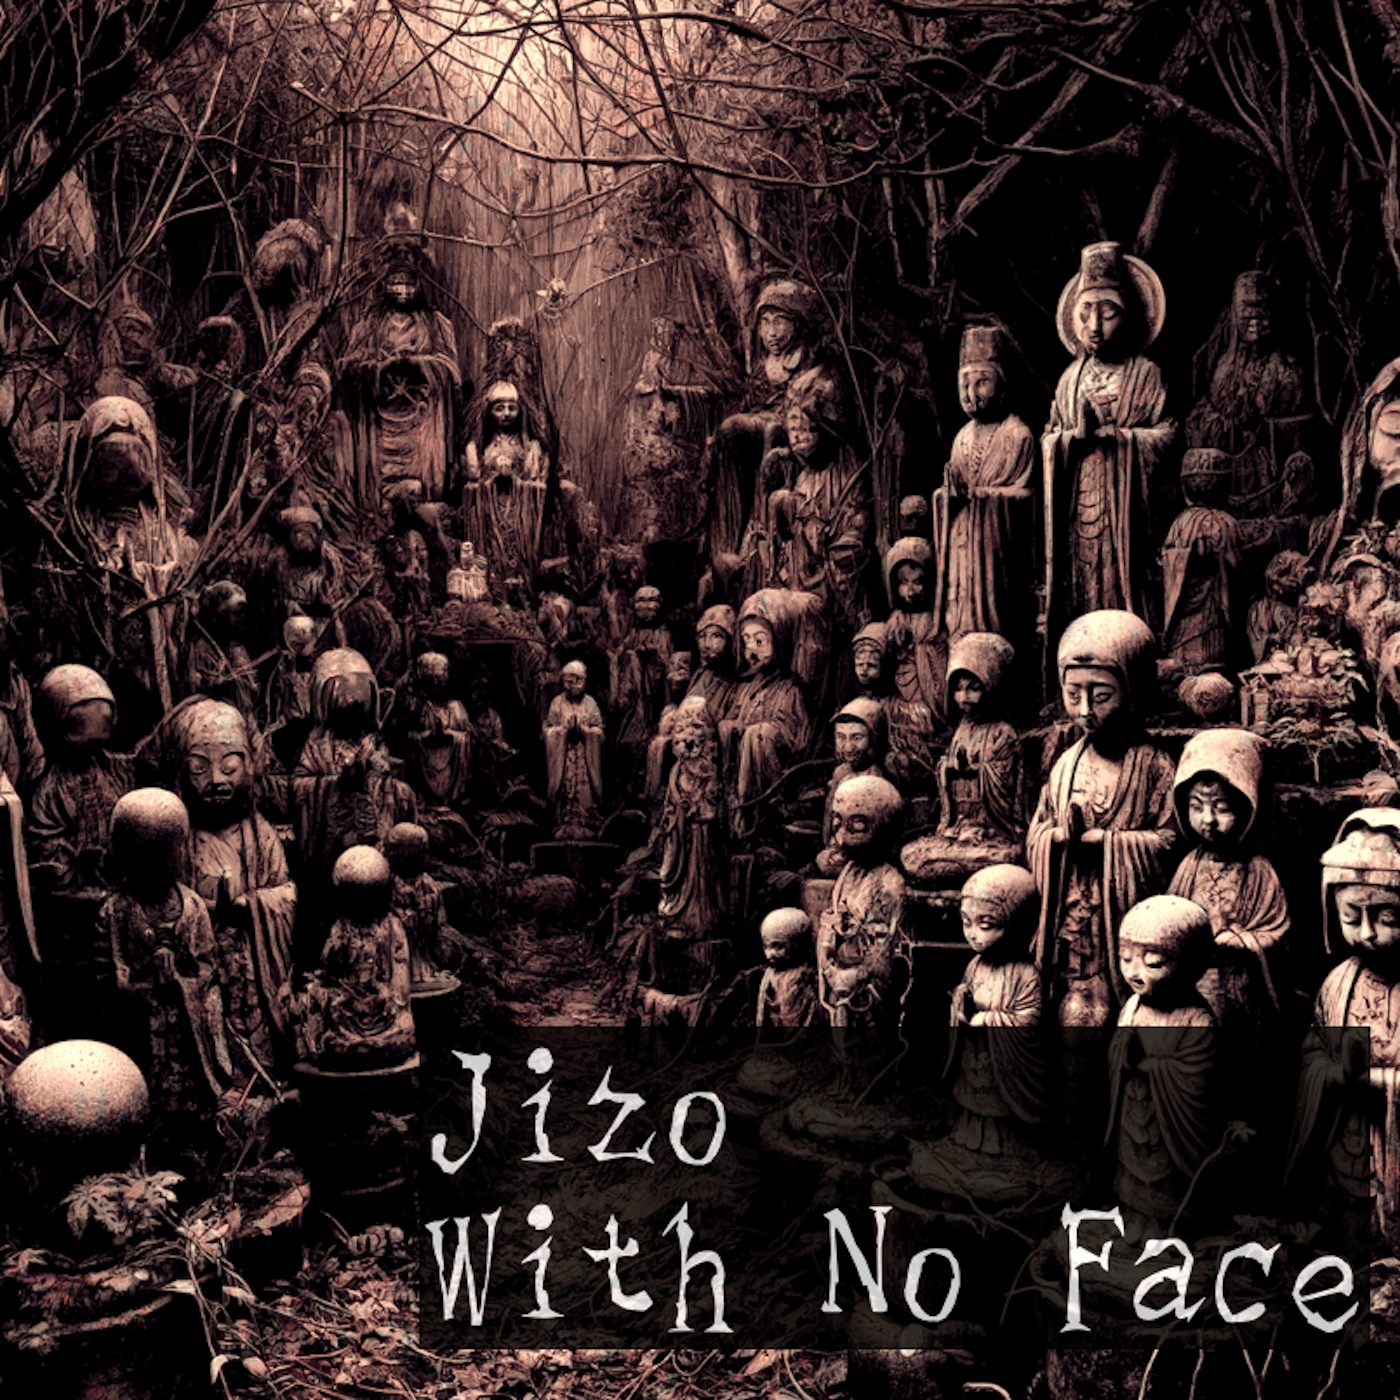 ep17_jizo_with_no_face